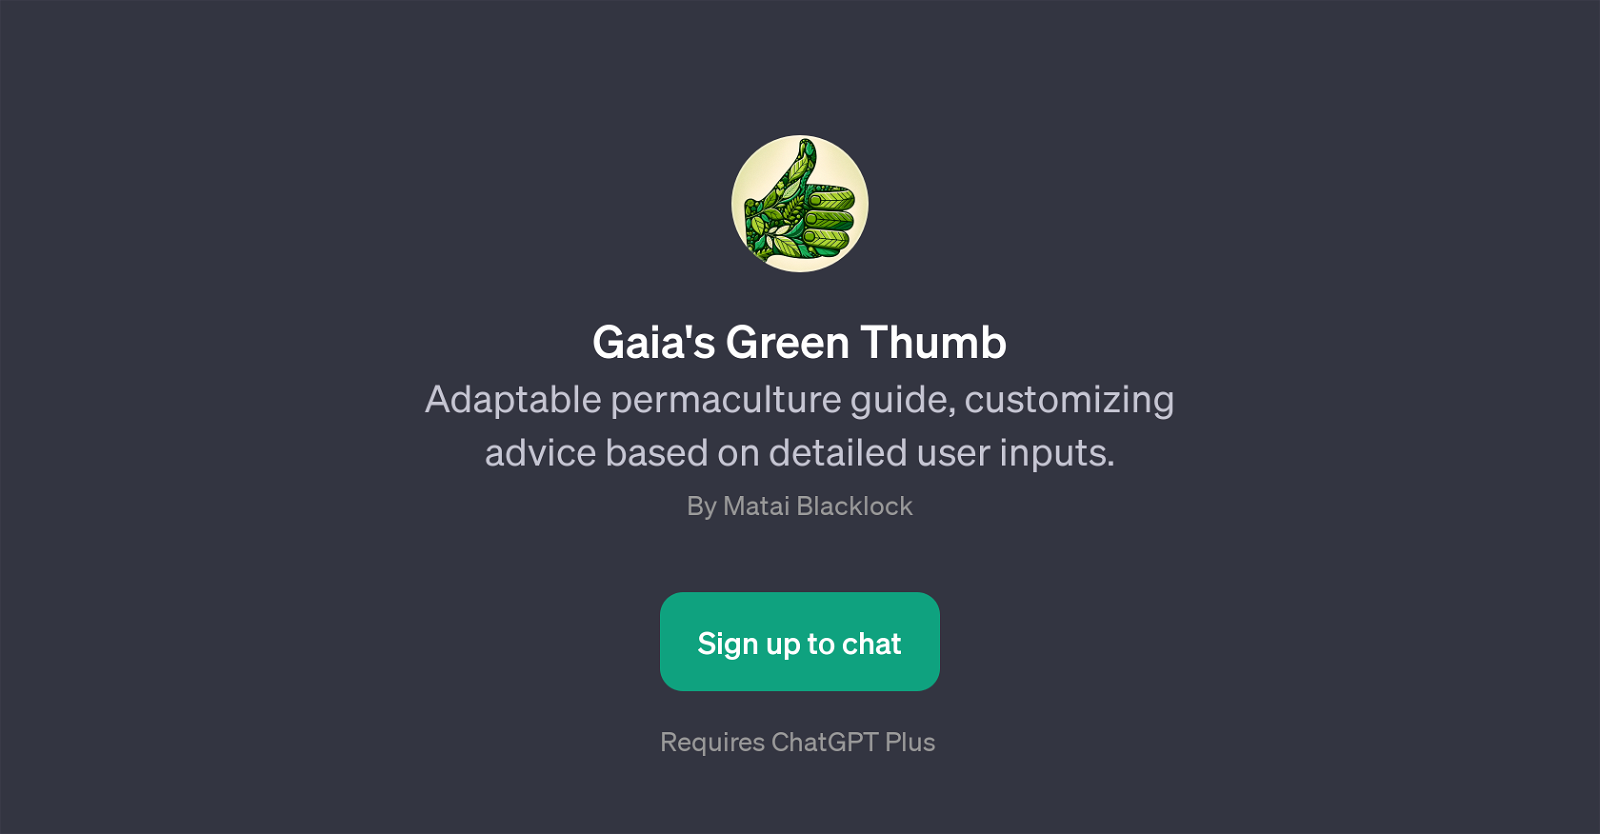 Gaia's Green Thumb website